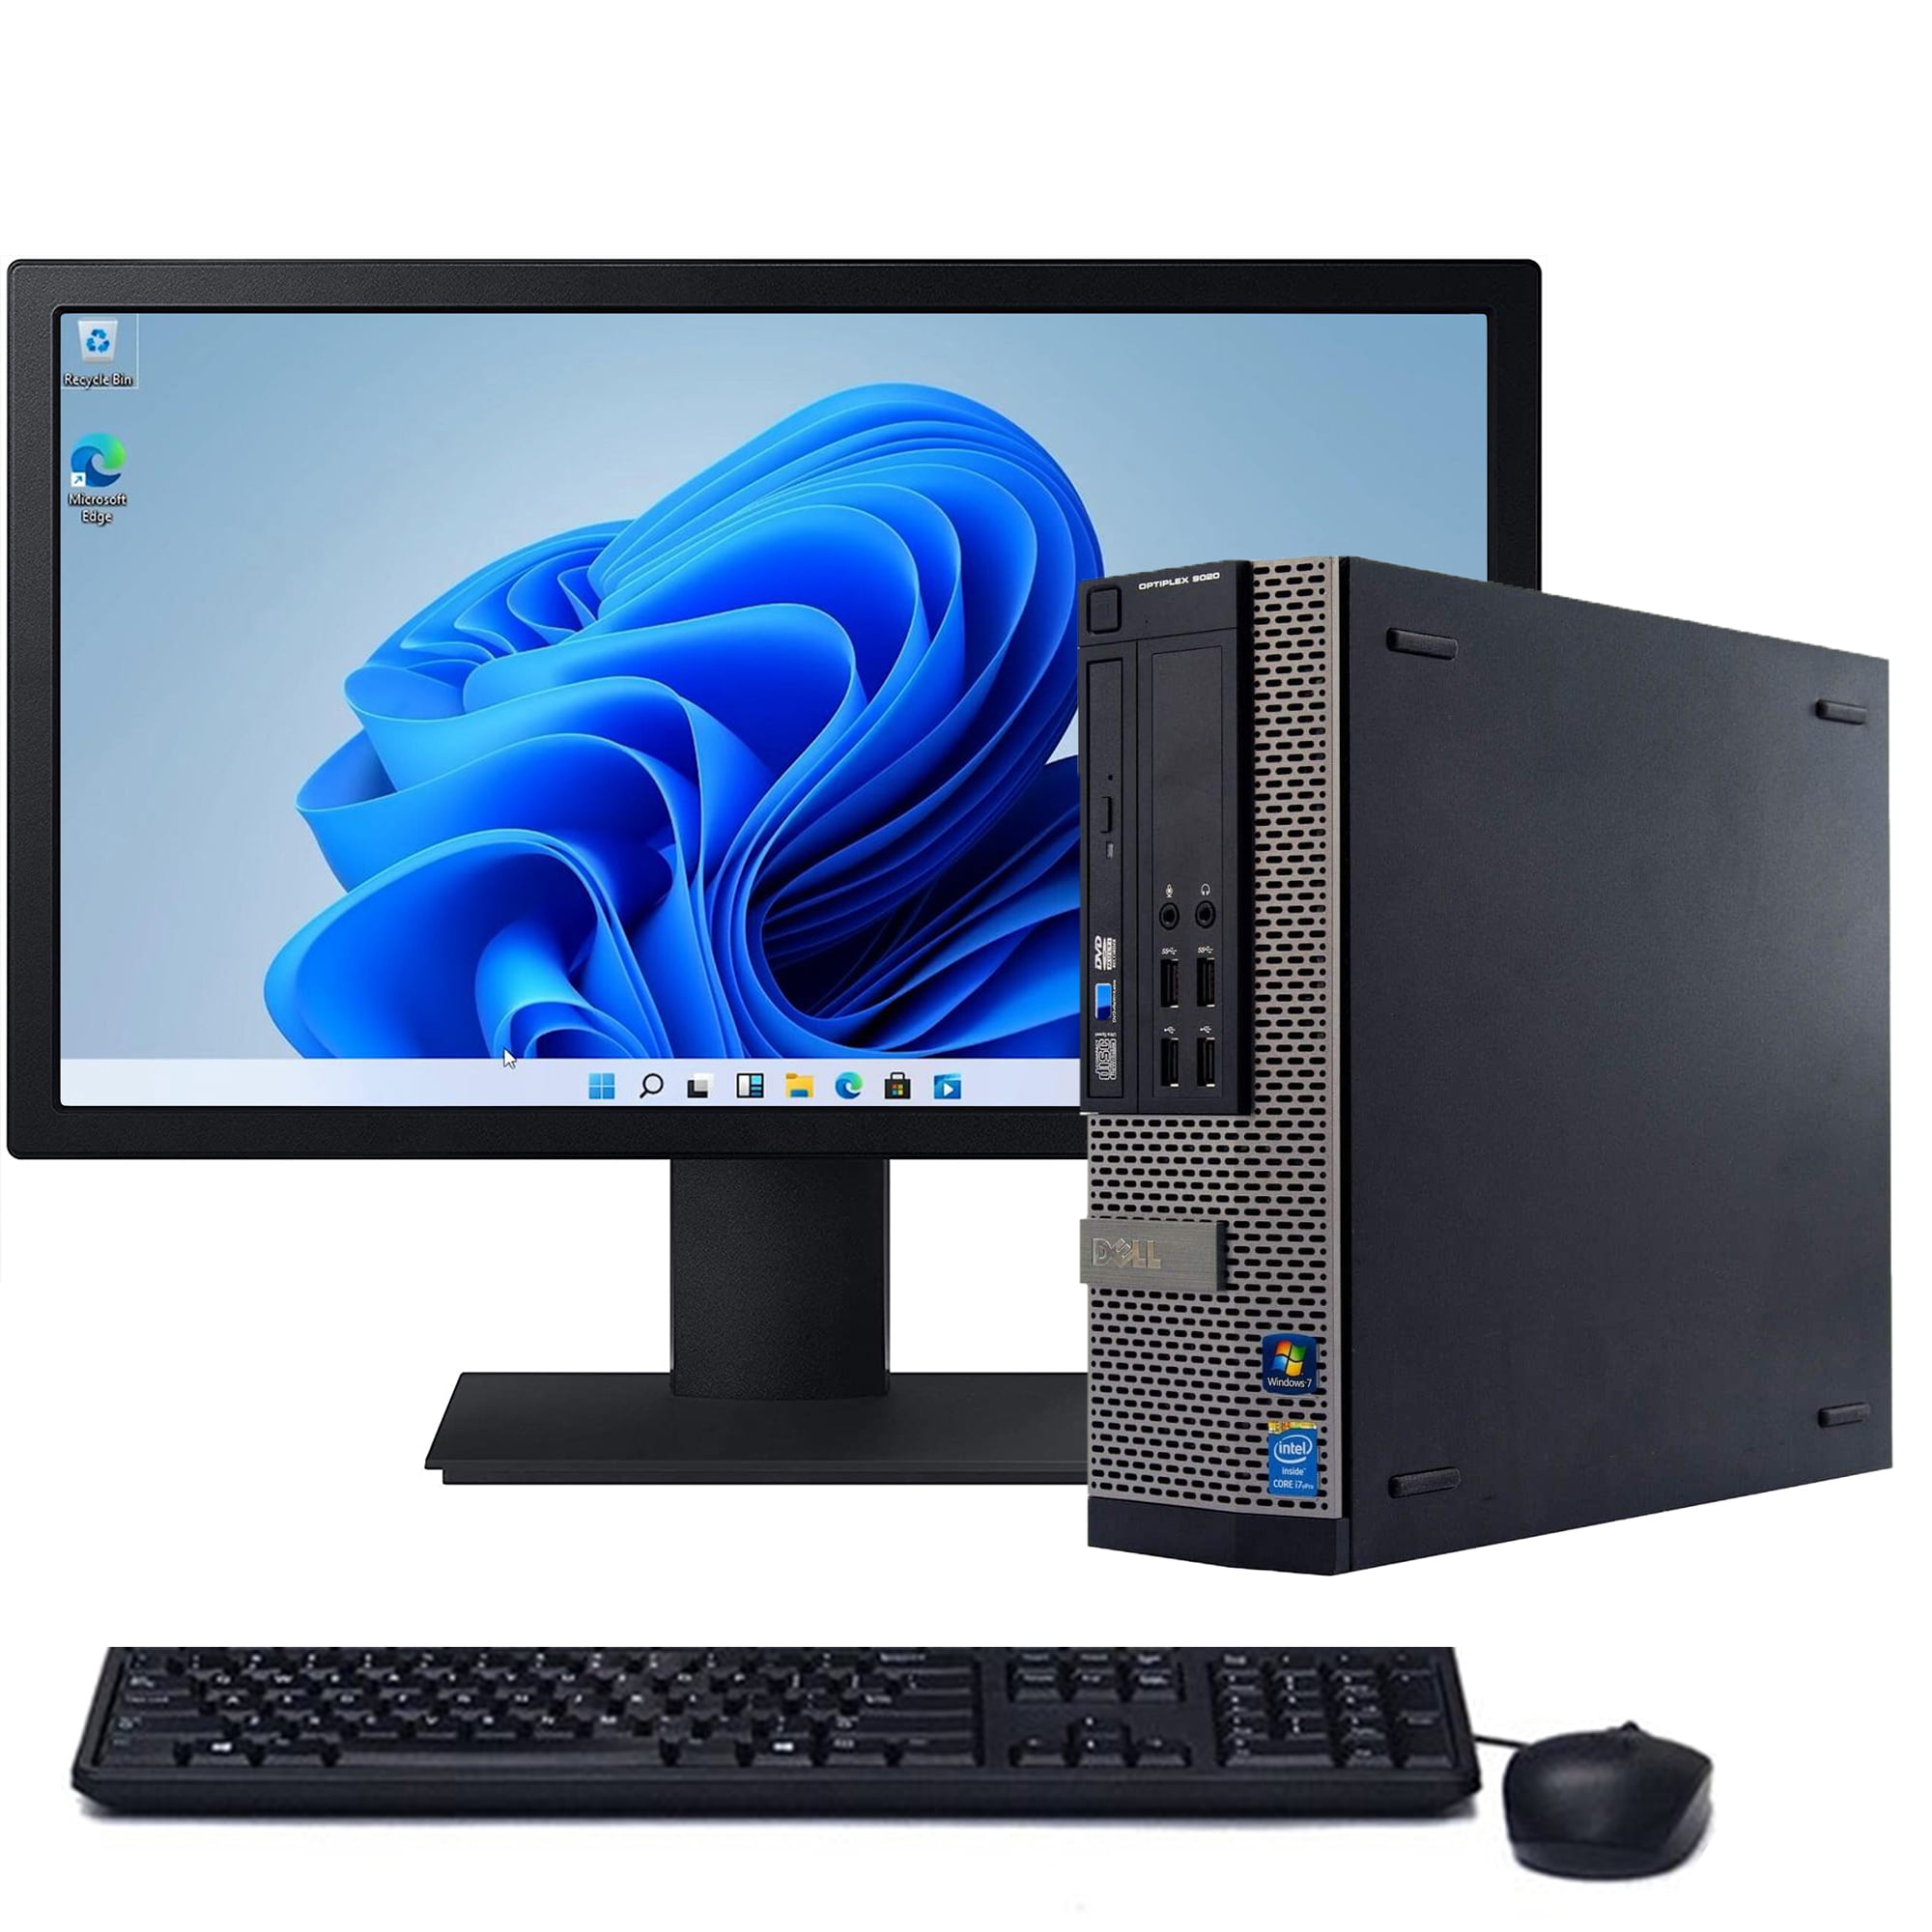 dell desktop computer